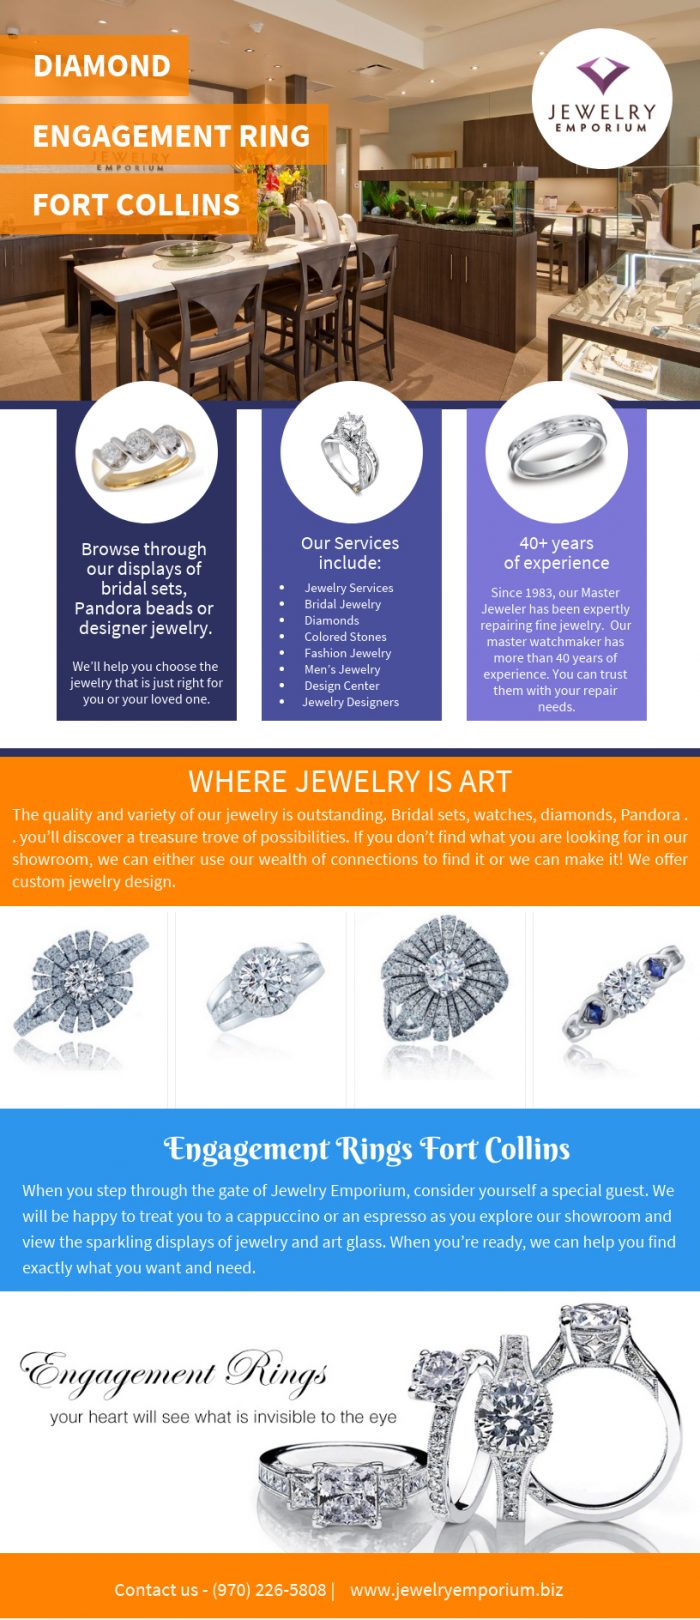 Diamond Engagement Ring Fort Collins | Call-9702265808 | jewelryemporium.biz